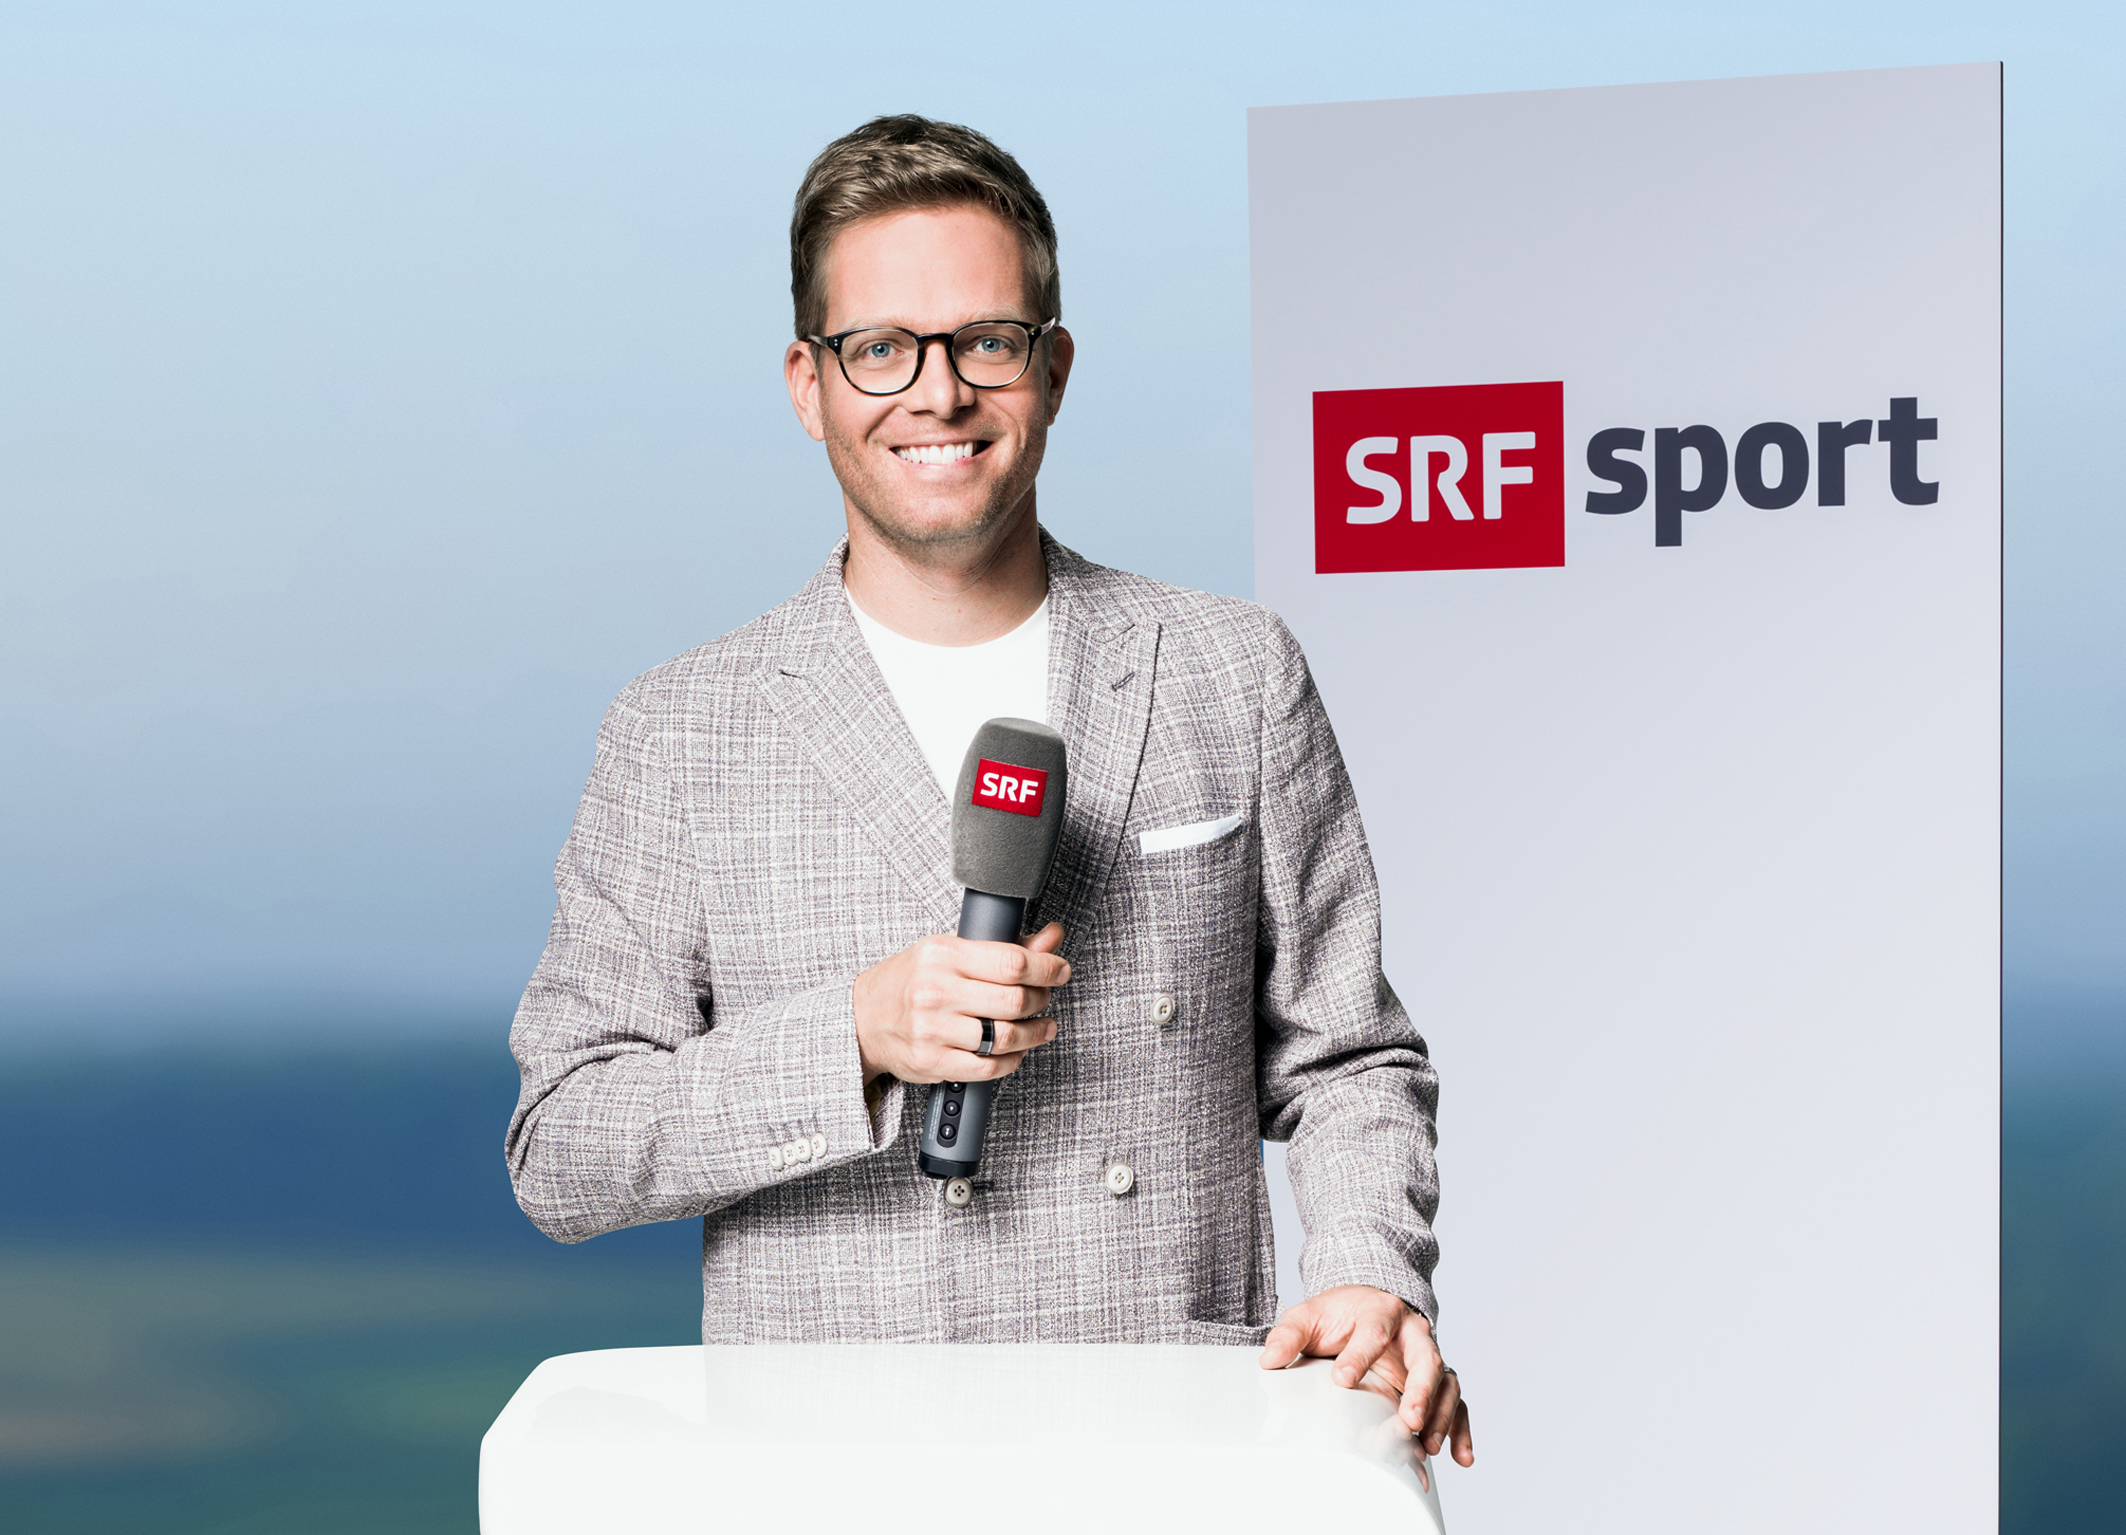 SRF überträgt die Tour de Suisse der Frauen und Männer live - Medienportal 